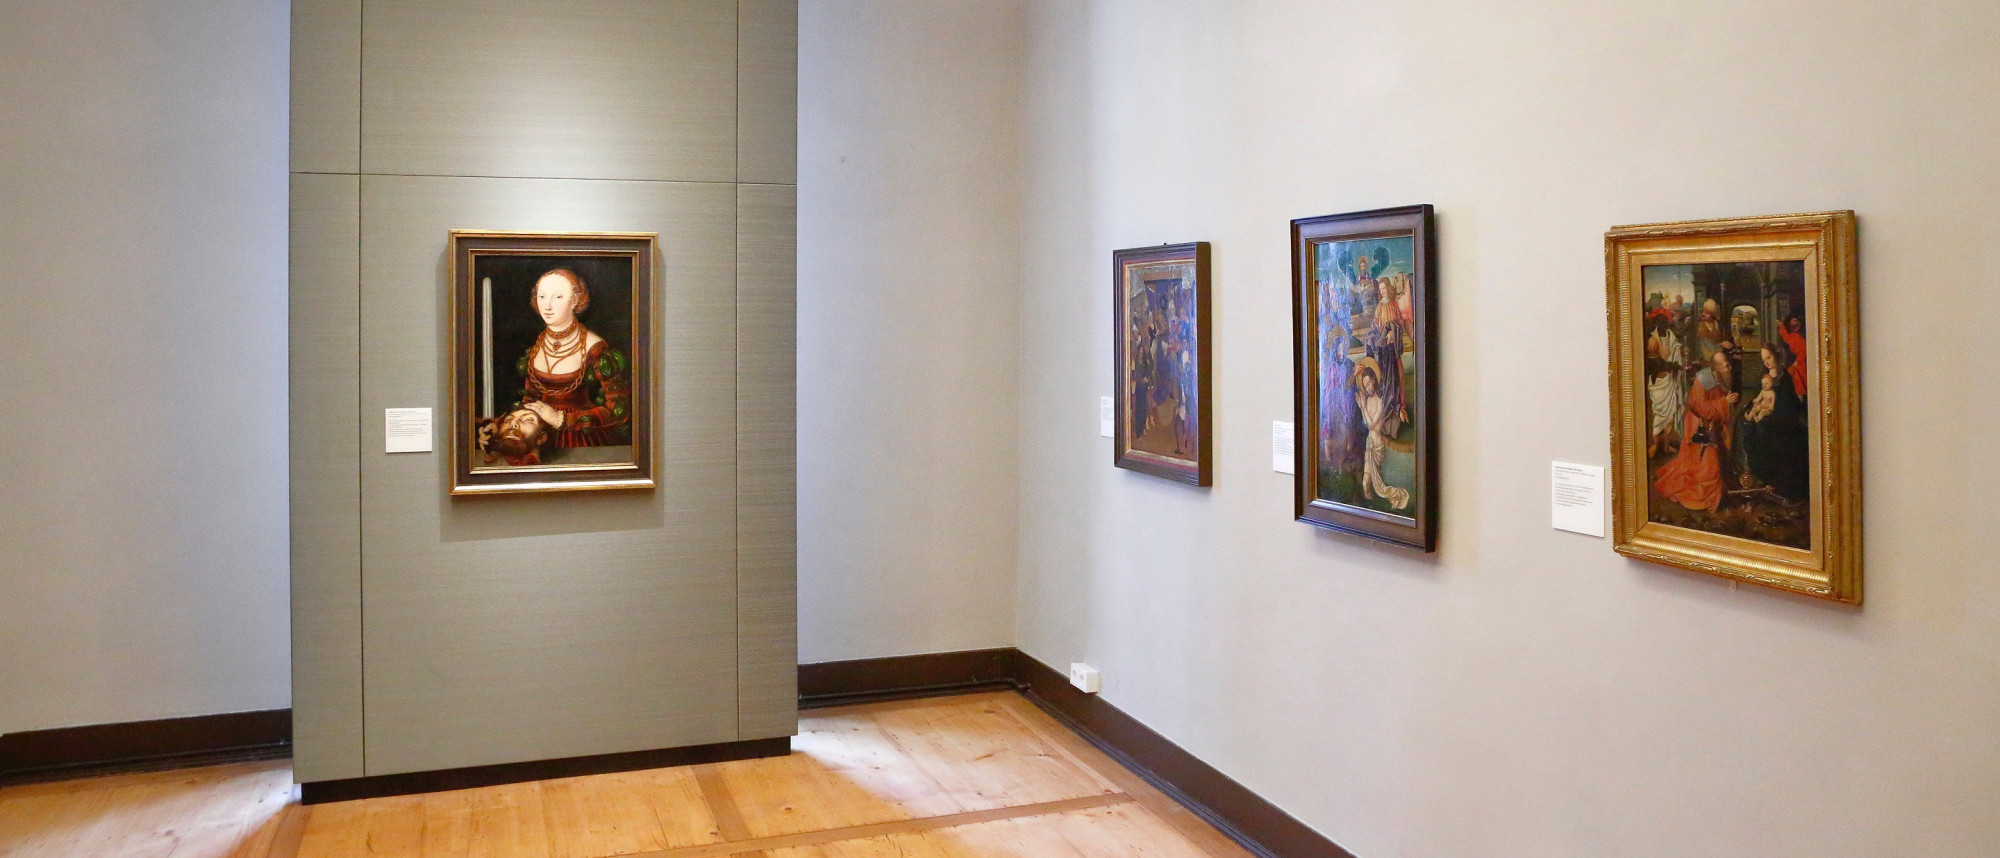 Blick in einen Kunstausstellungsraum. An der rechten Wand hängen drei gotische Tafelgemälde. An der Wand links davon hängt das Gemälde Judith mit dem Haupt des Holofernes von Lucas Cranach dem Älteren.